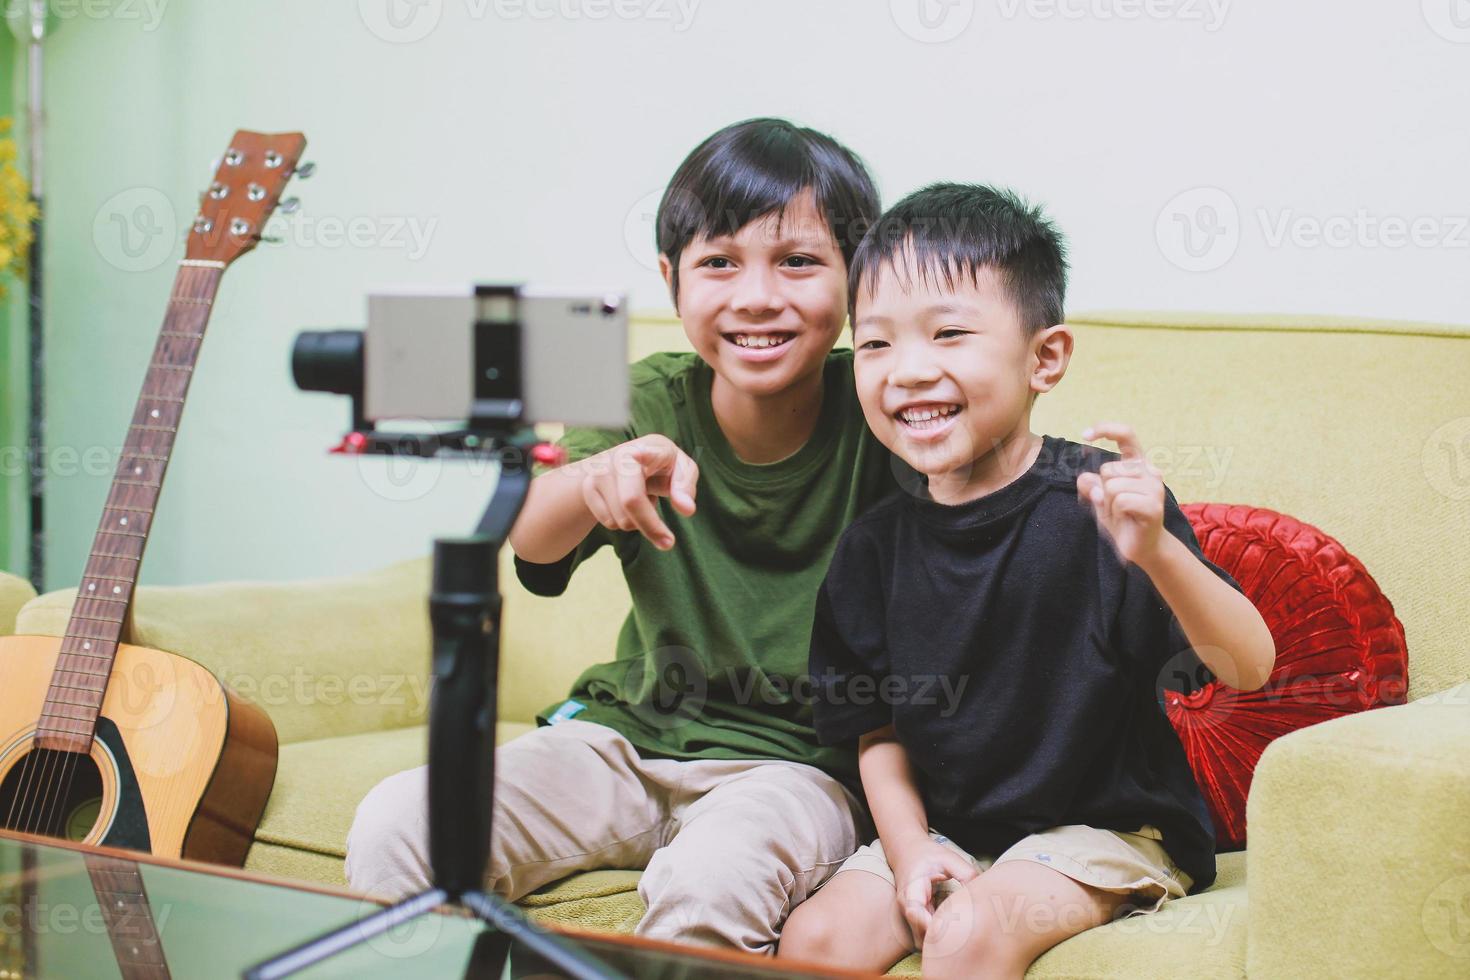 zwei asiatische kinder youtuber lächeln und schauen auf ein smartphone, während sie videoinhalte erstellen foto